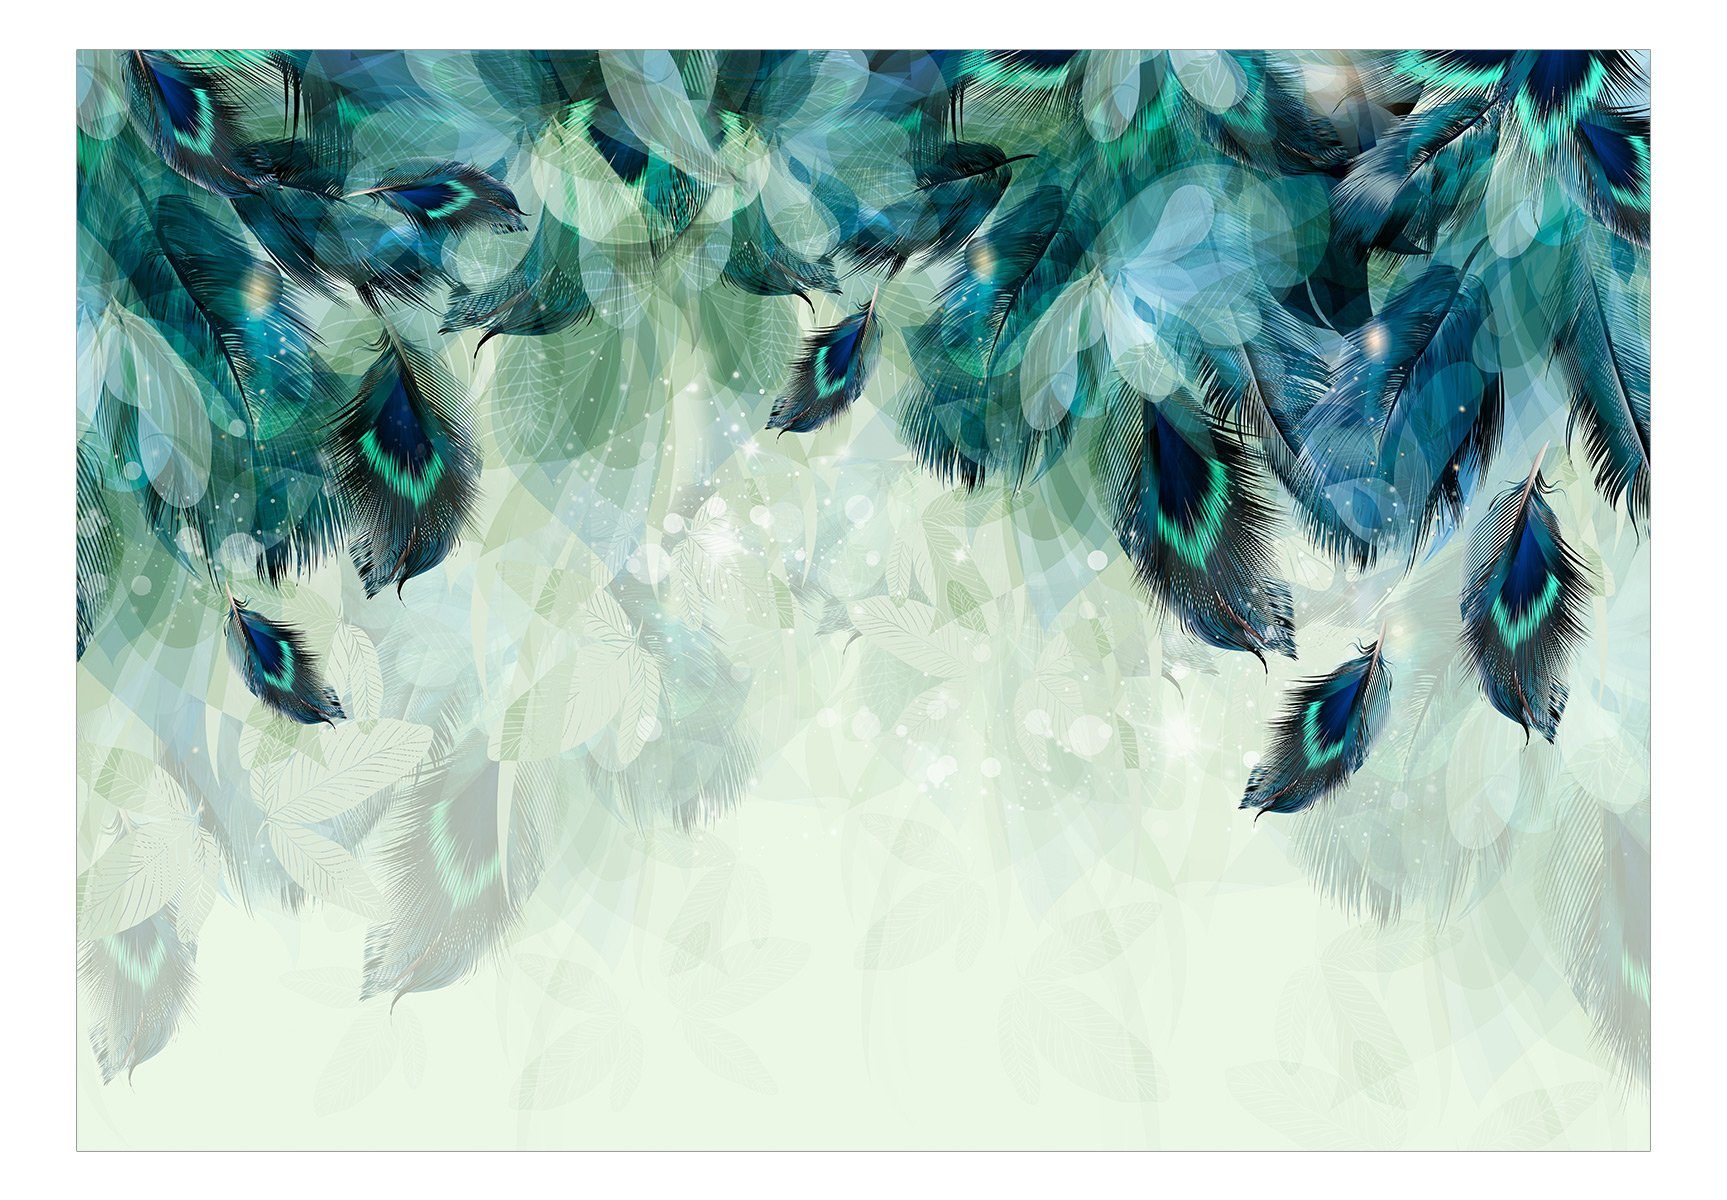 KUNSTLOFT Vliestapete Emerald Feathers 0.98x0.7 Design halb-matt, m, matt, Tapete lichtbeständige